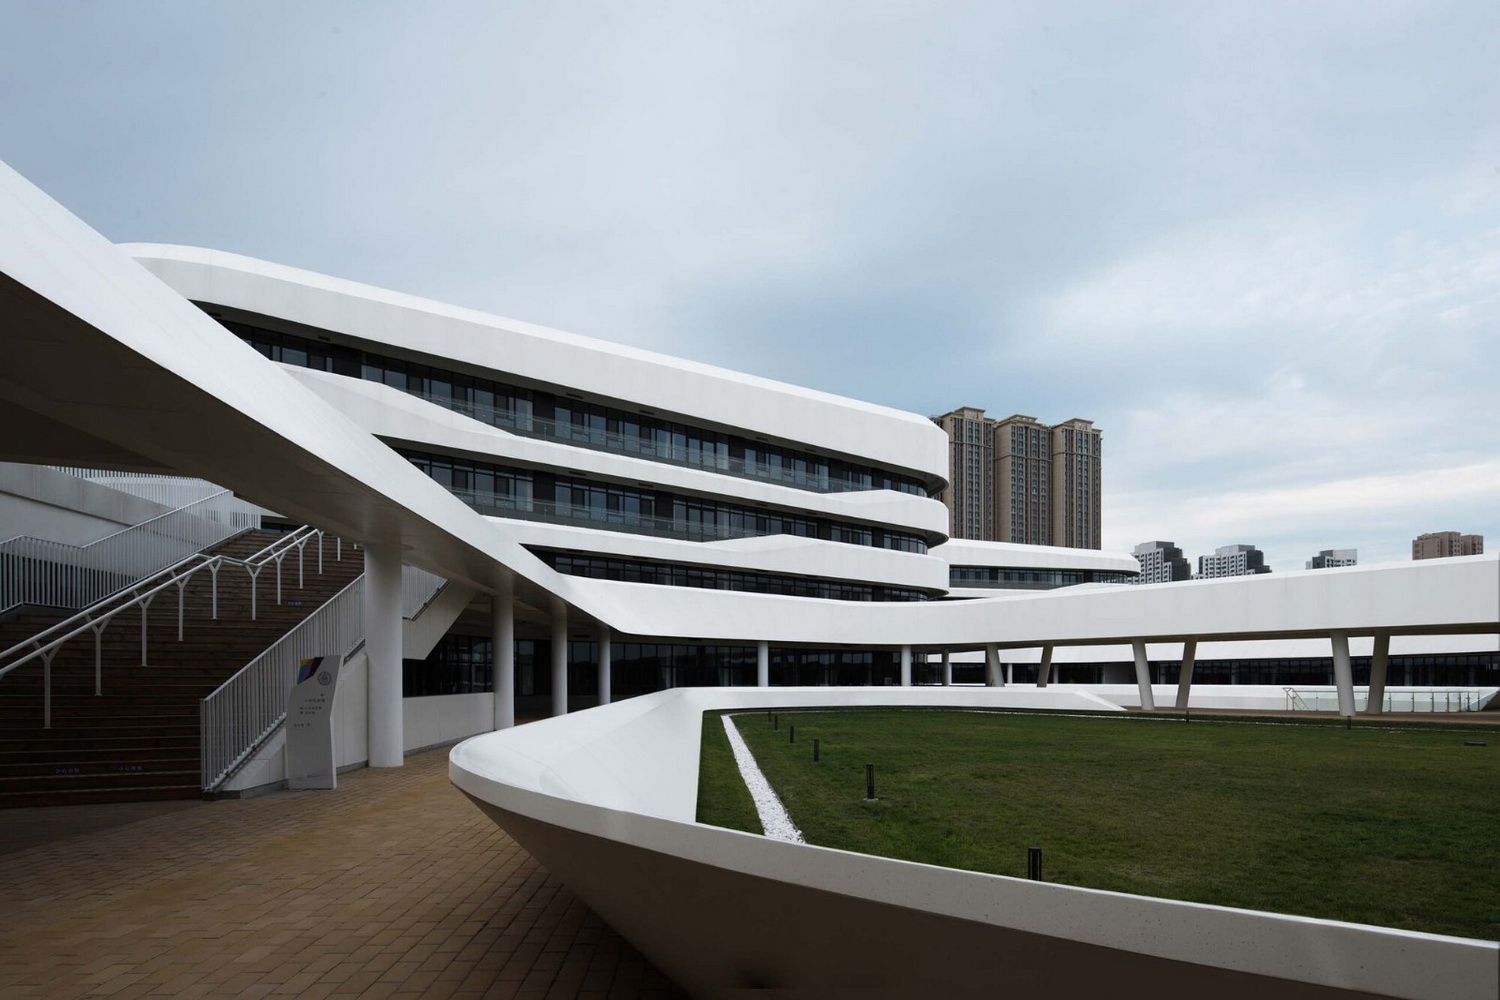 清华大学附属中学广华学校 建筑设计 / 北京市建筑设计研究院